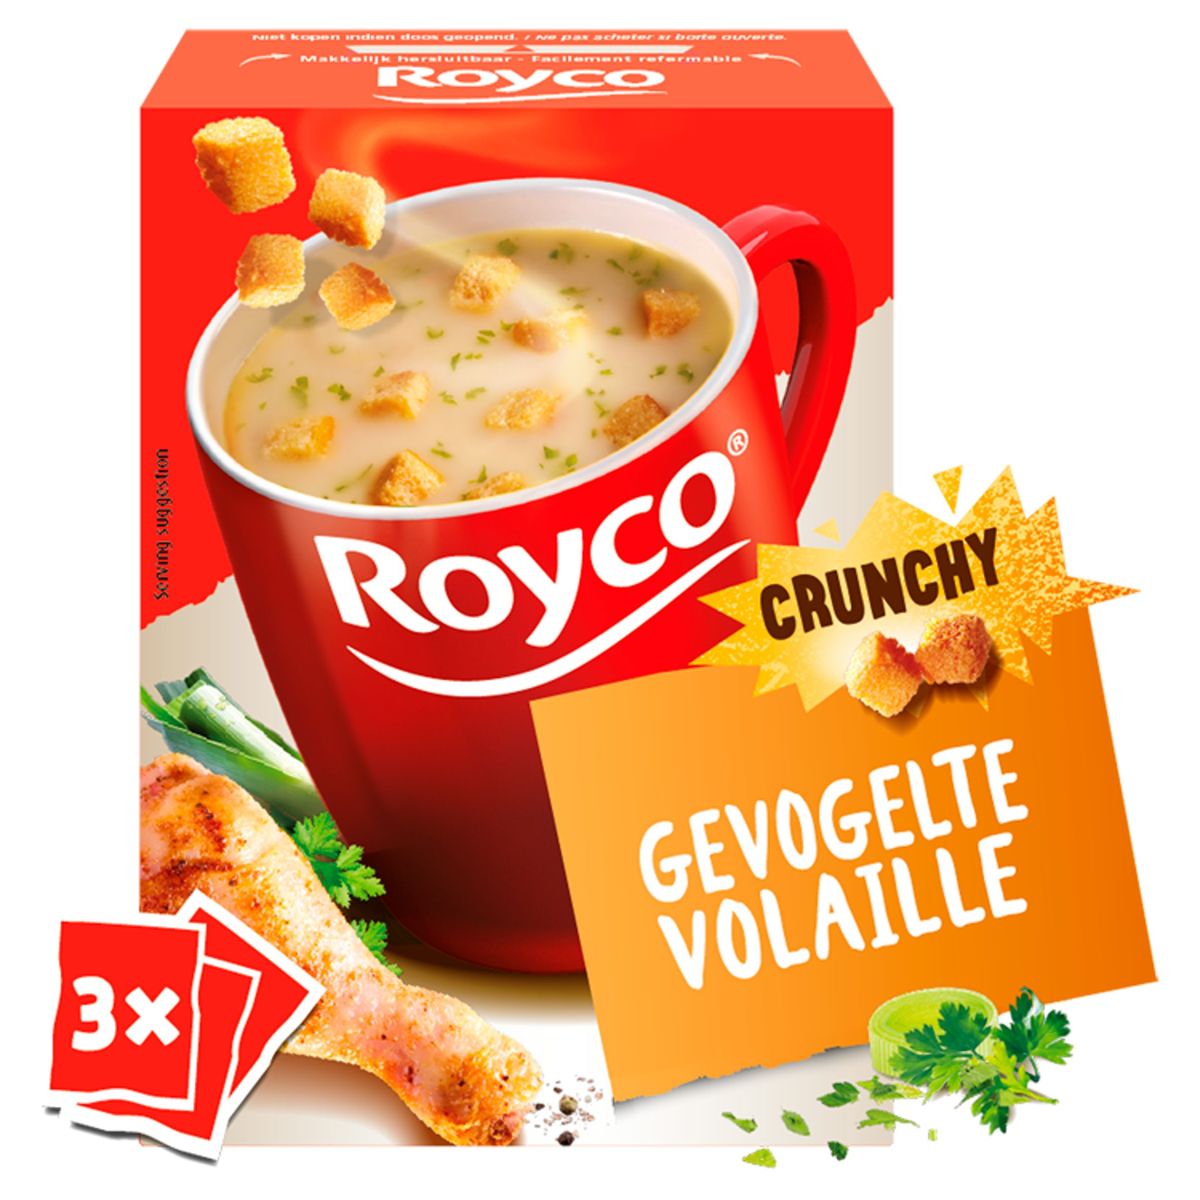 ROYCO CRUNCHY soupe champignons